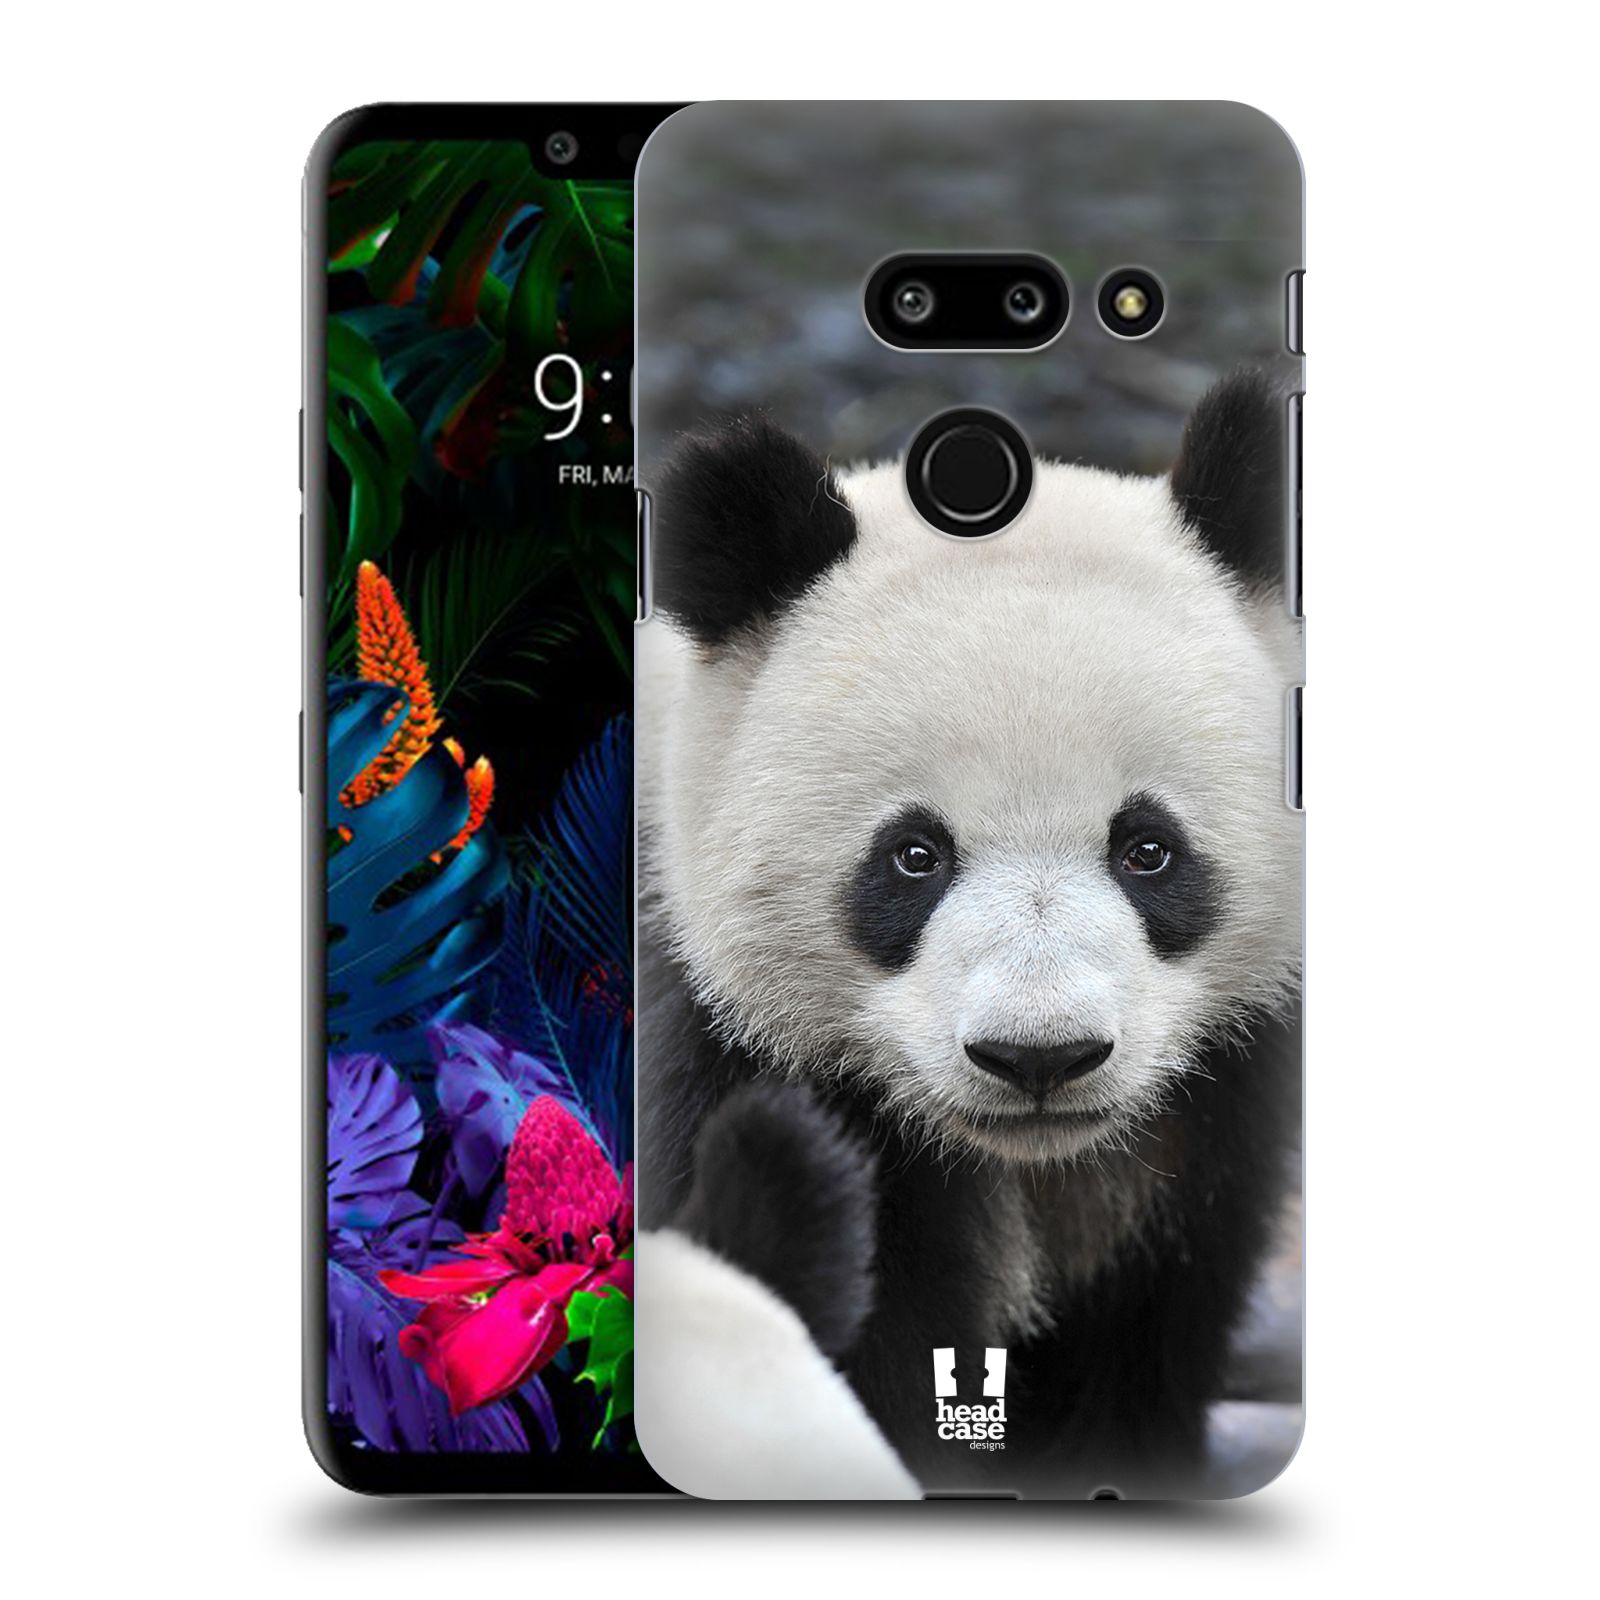 Zadní obal pro mobil LG G8 ThinQ - HEAD CASE - Svět zvířat medvěd panda